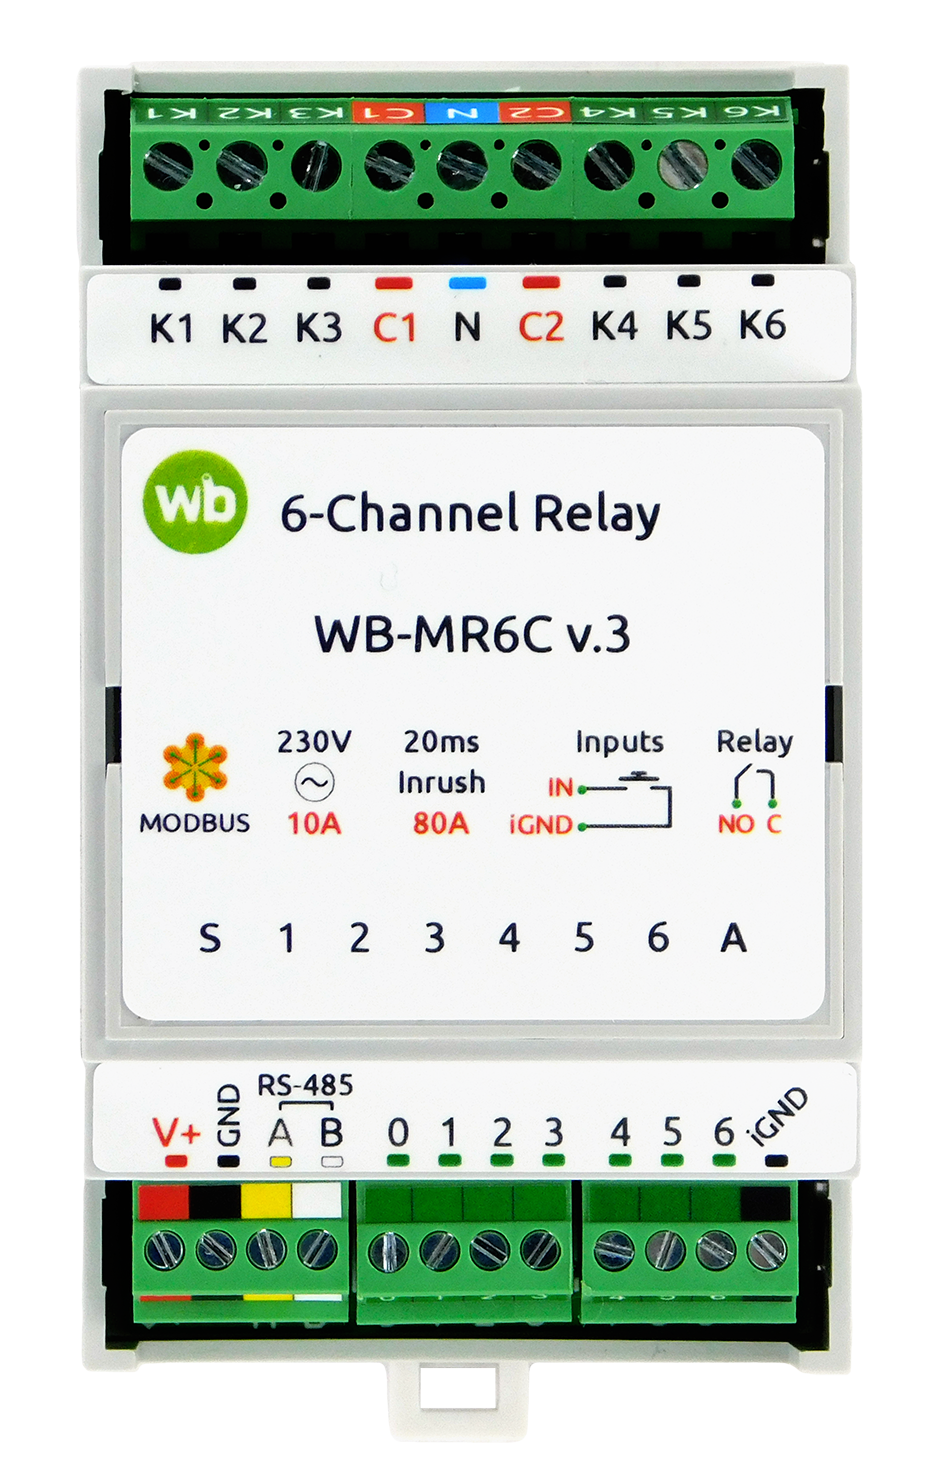 WB-MR6C v.3